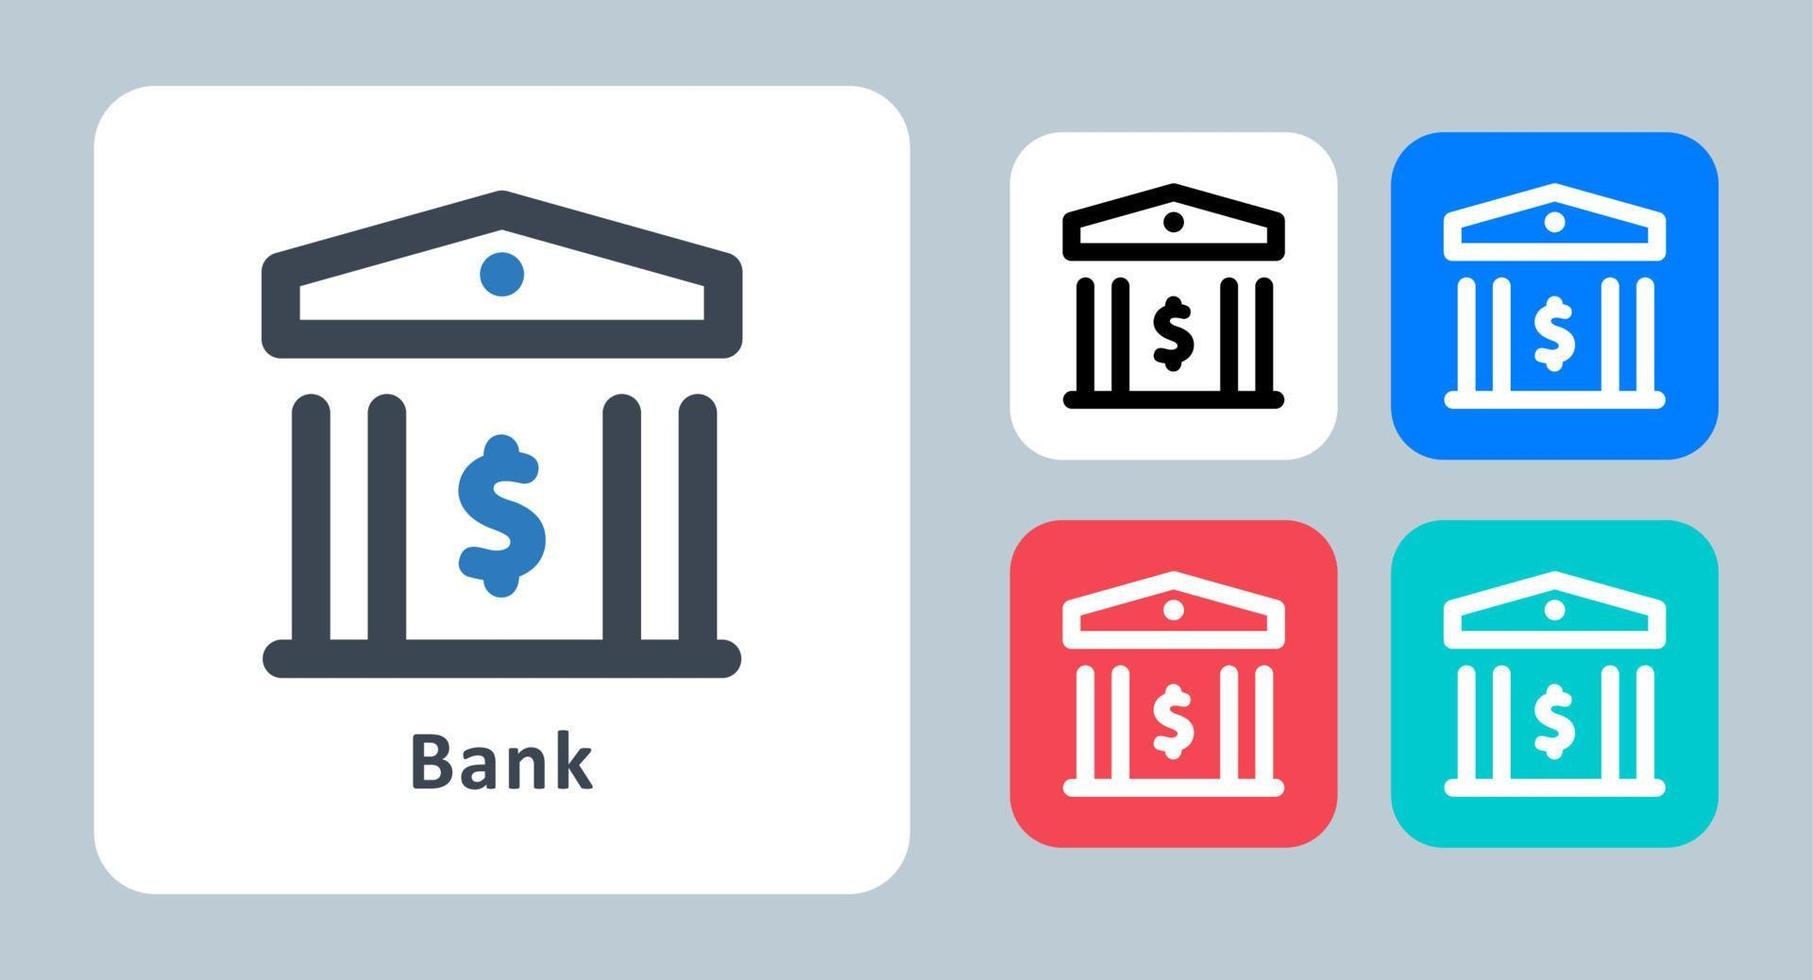 Bank-Symbol - Vektor-Illustration. bank, finanzen, geld, einzahlung, einsparungen, bankwesen, gebäude, linie, umriss, flach, symbole . vektor